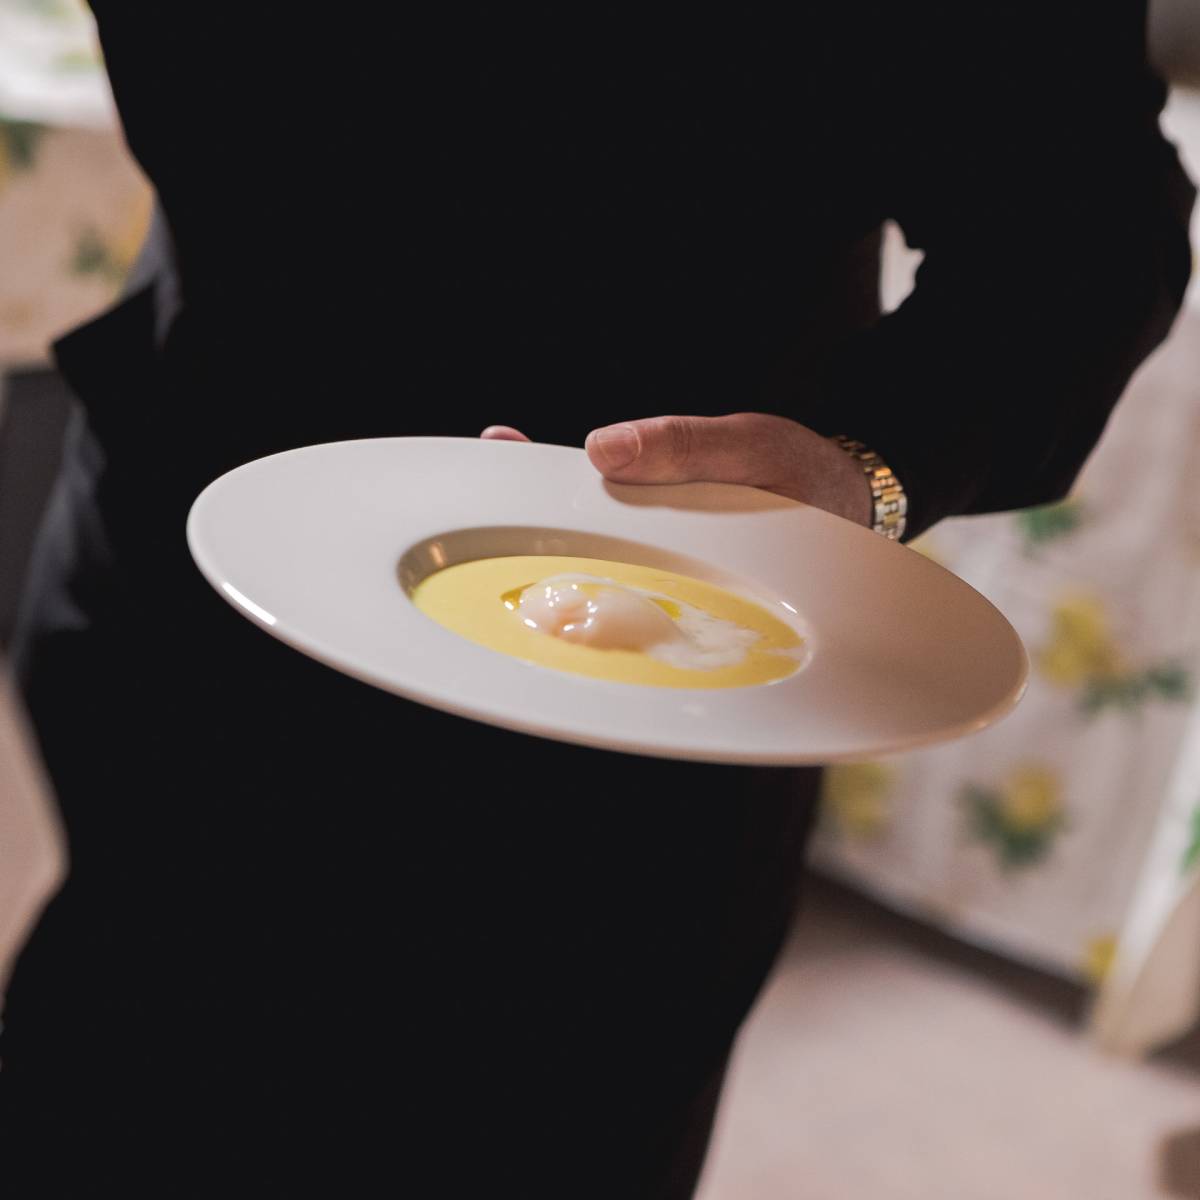 Crema di patate con uovo affogato e tartufo nero - Apollinare Catering